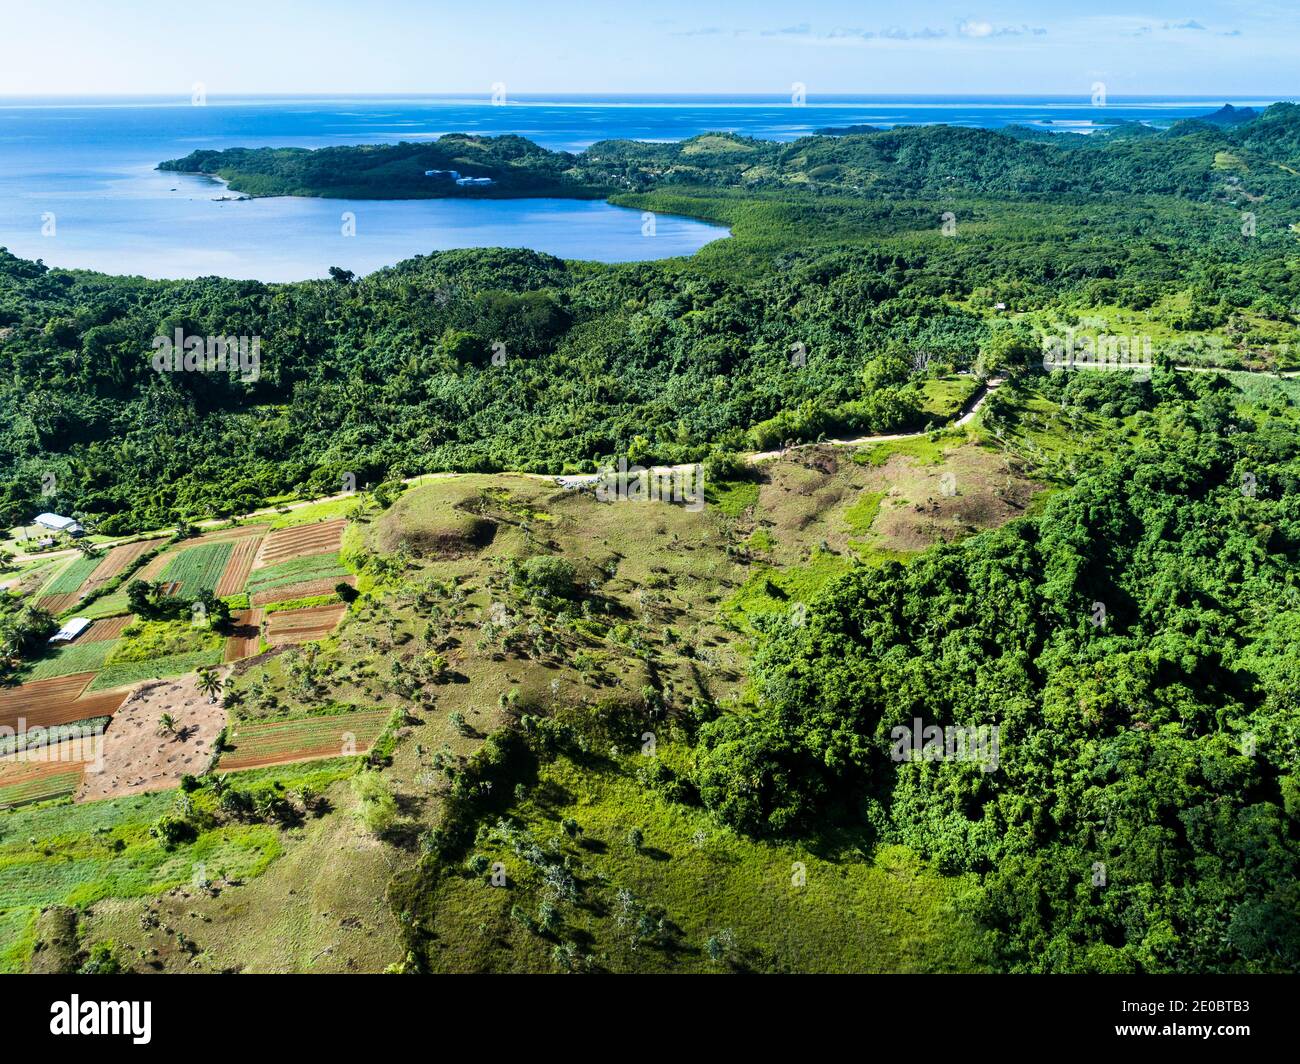 Lokale KED, auch Terrasse, ist modelliert Landform von Hügel, geheimnisvolle alte von Menschen geschaffene Ruinen, Aimeliik, Insel Babeldaob, Palau, Mikronesien, Ozeanien Stockfoto